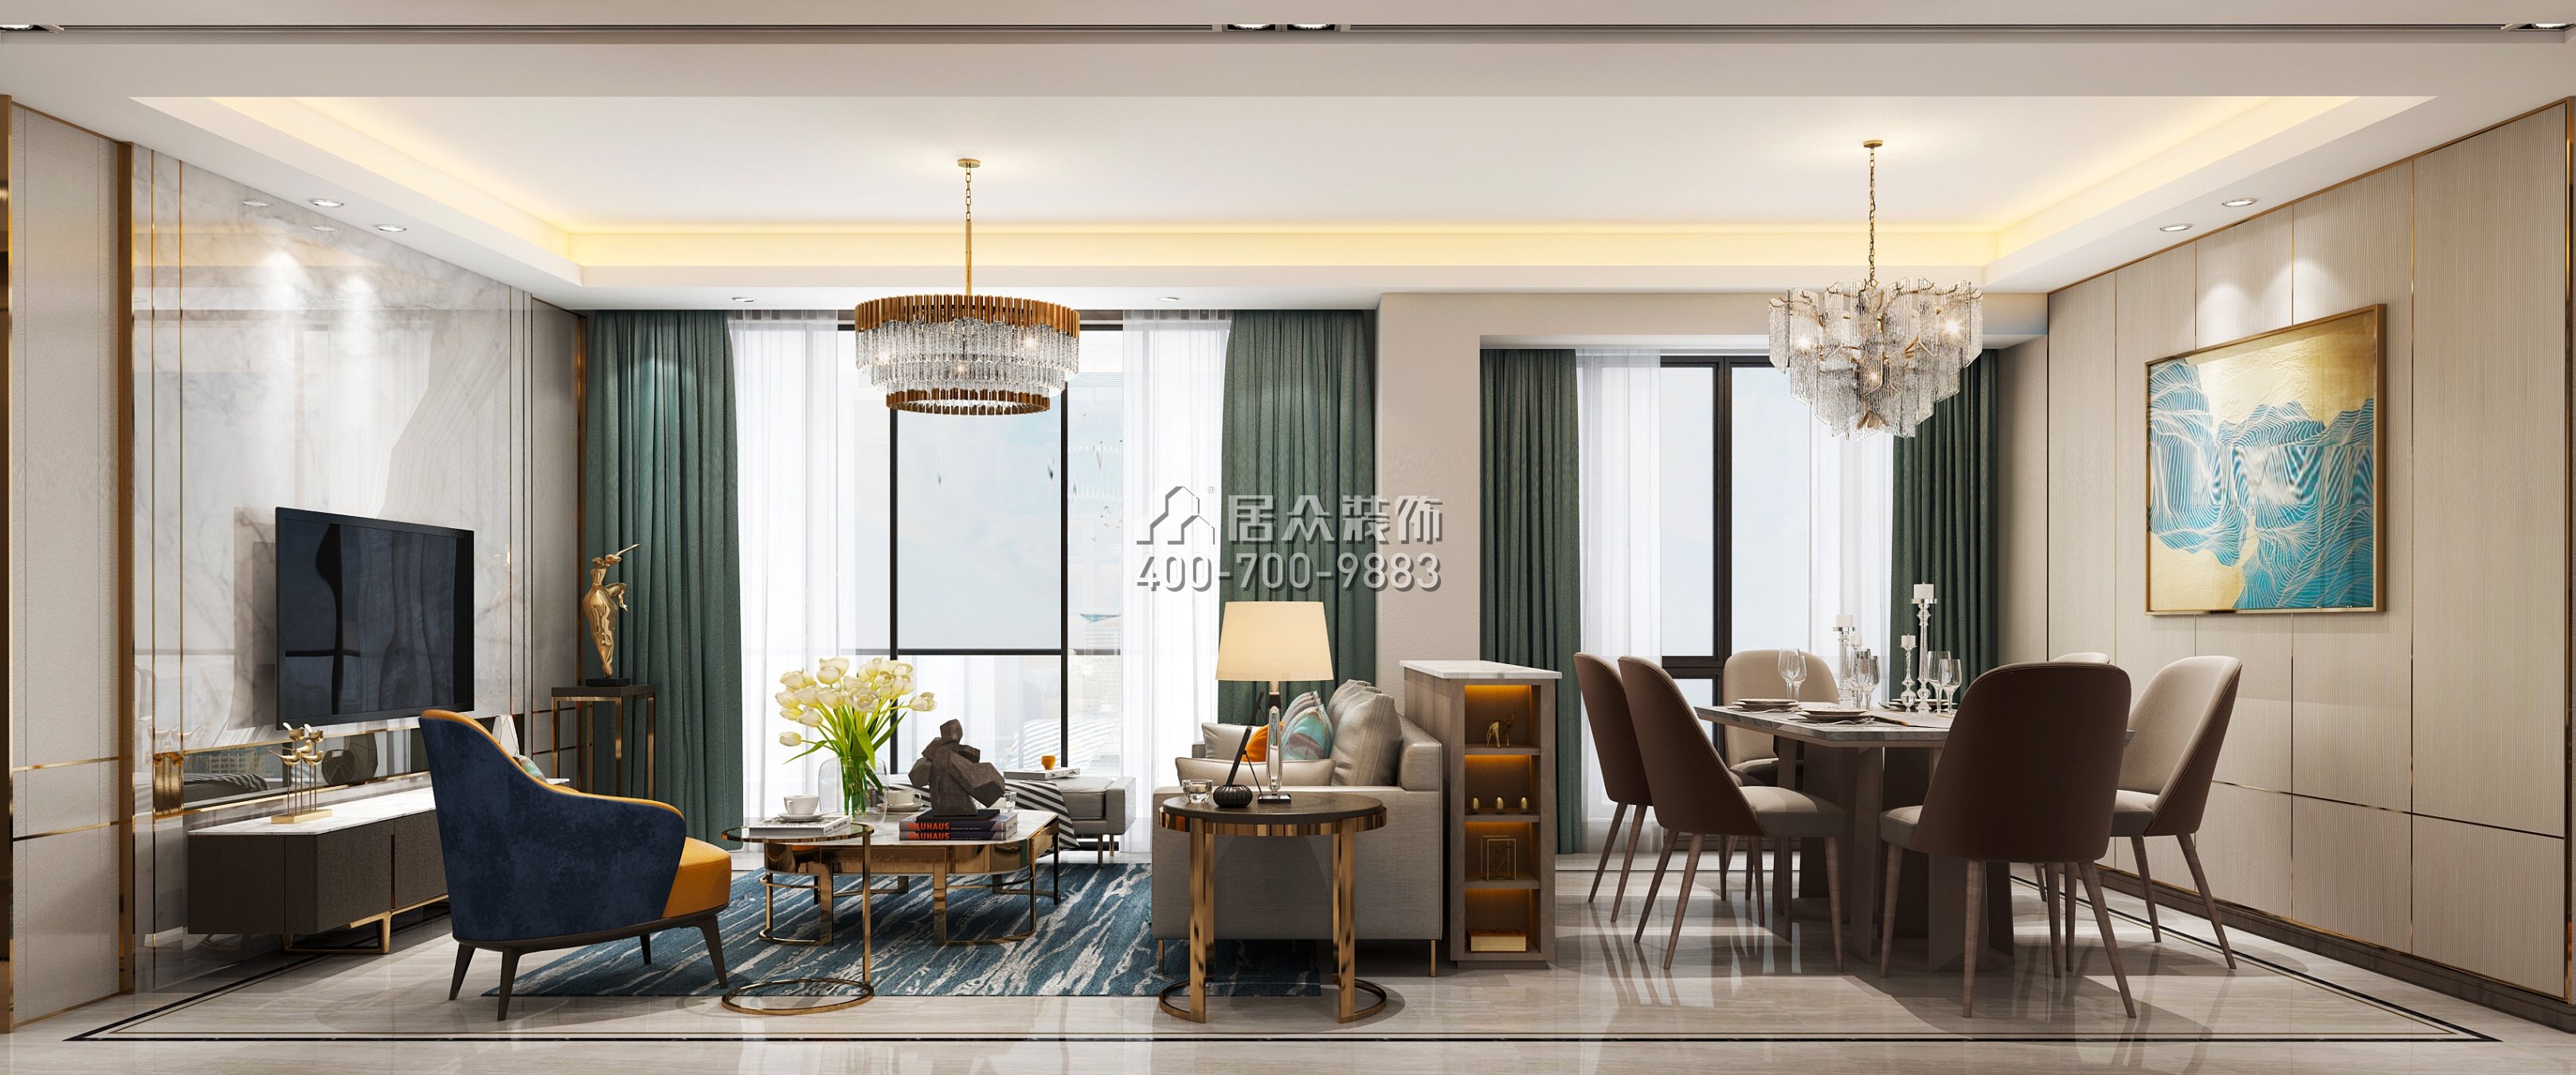 聯投東方華府二期150平方米現代簡約風格平層戶型客廳裝修效果圖